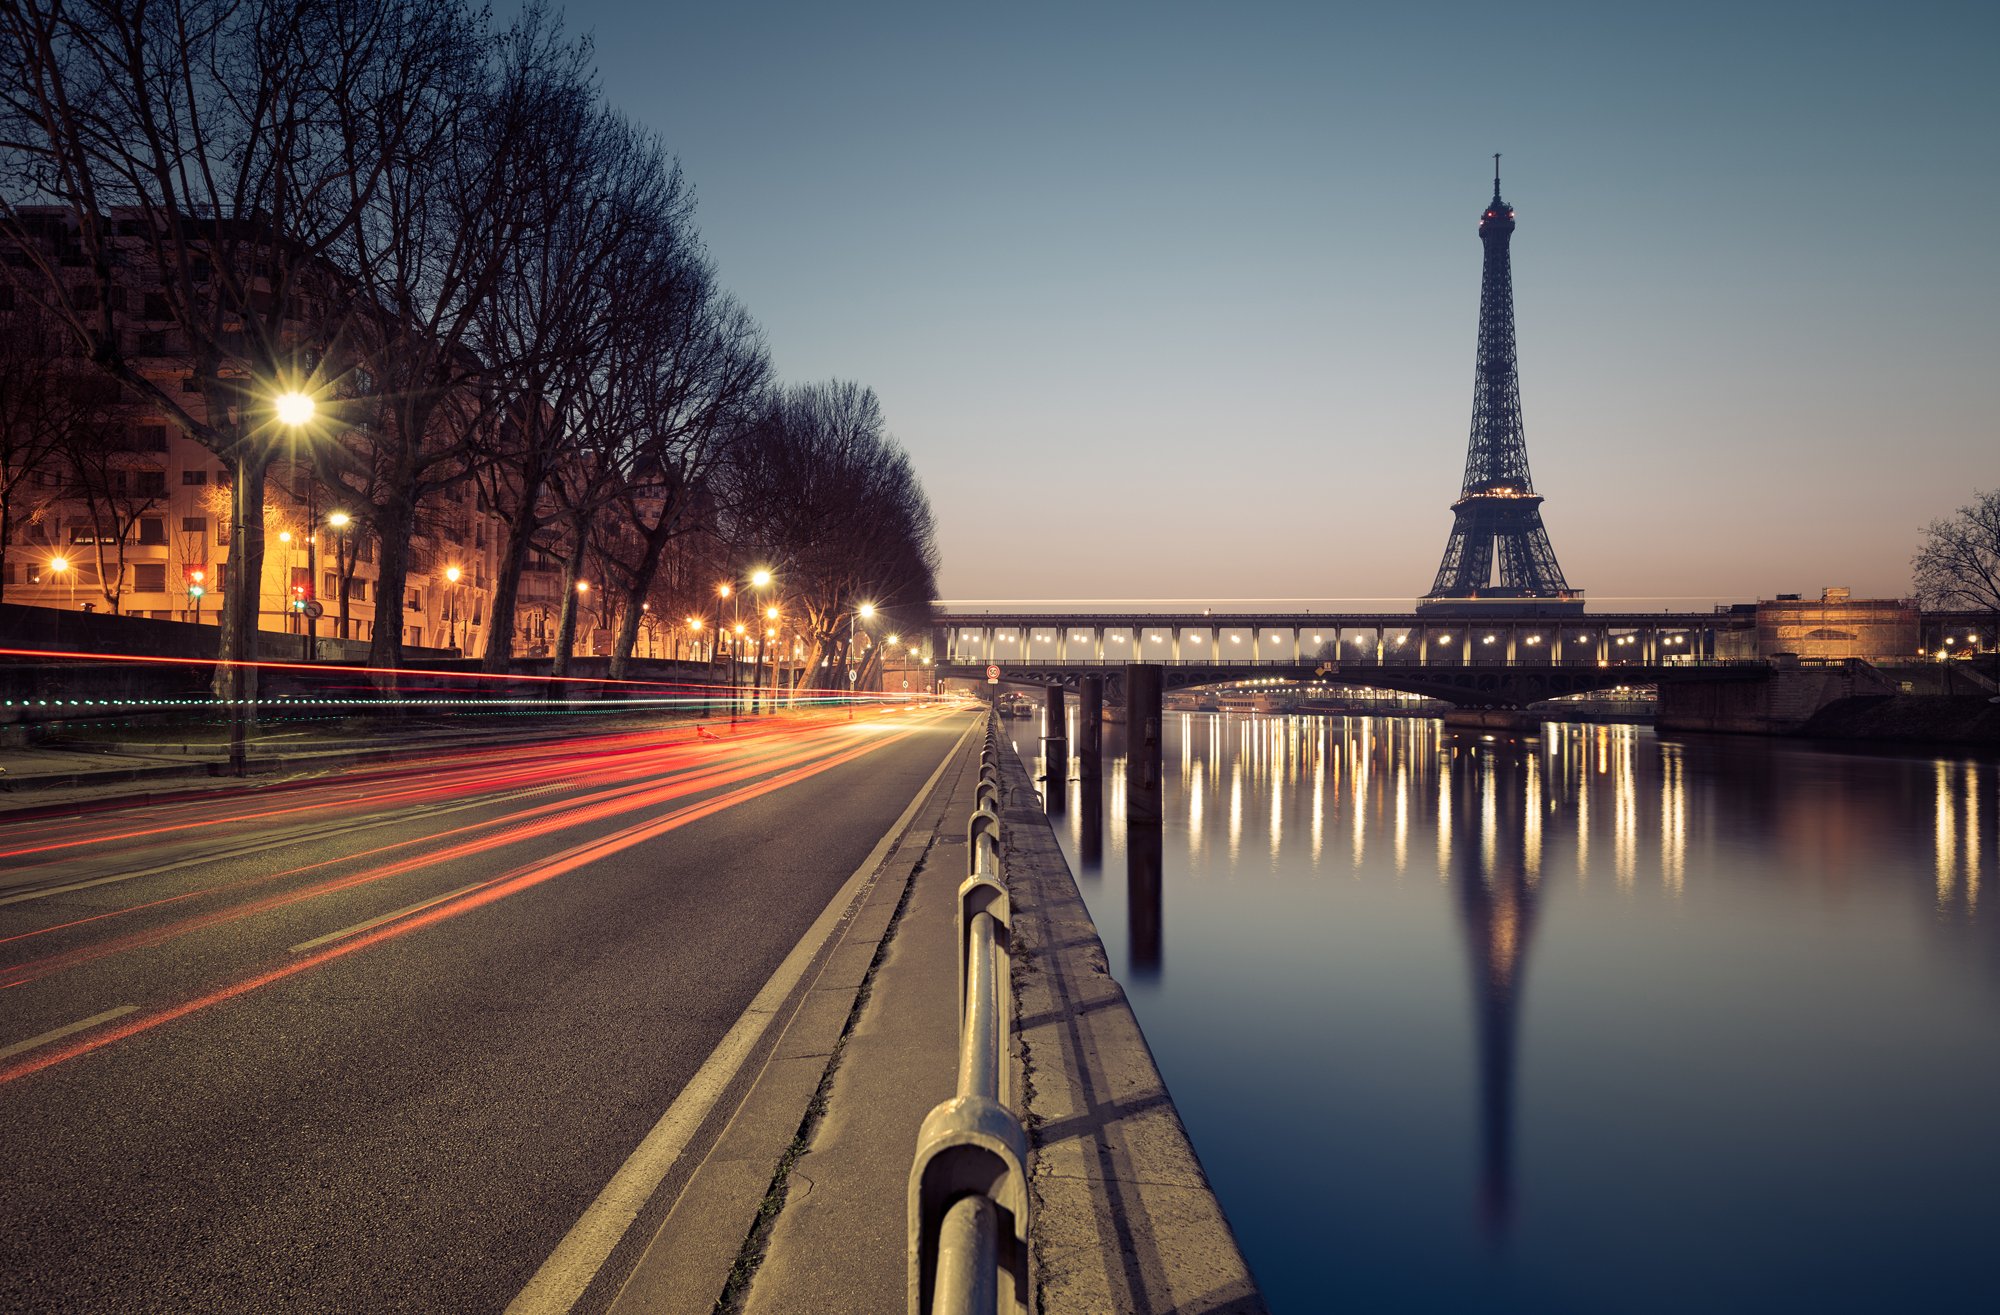 Картинки для фона. Холст TOPPOSTERS V-247. Франция Париж Эйфелева башня. Франция Эйфель мост. TOPPOSTERS V-247 модульный холст 125х80.